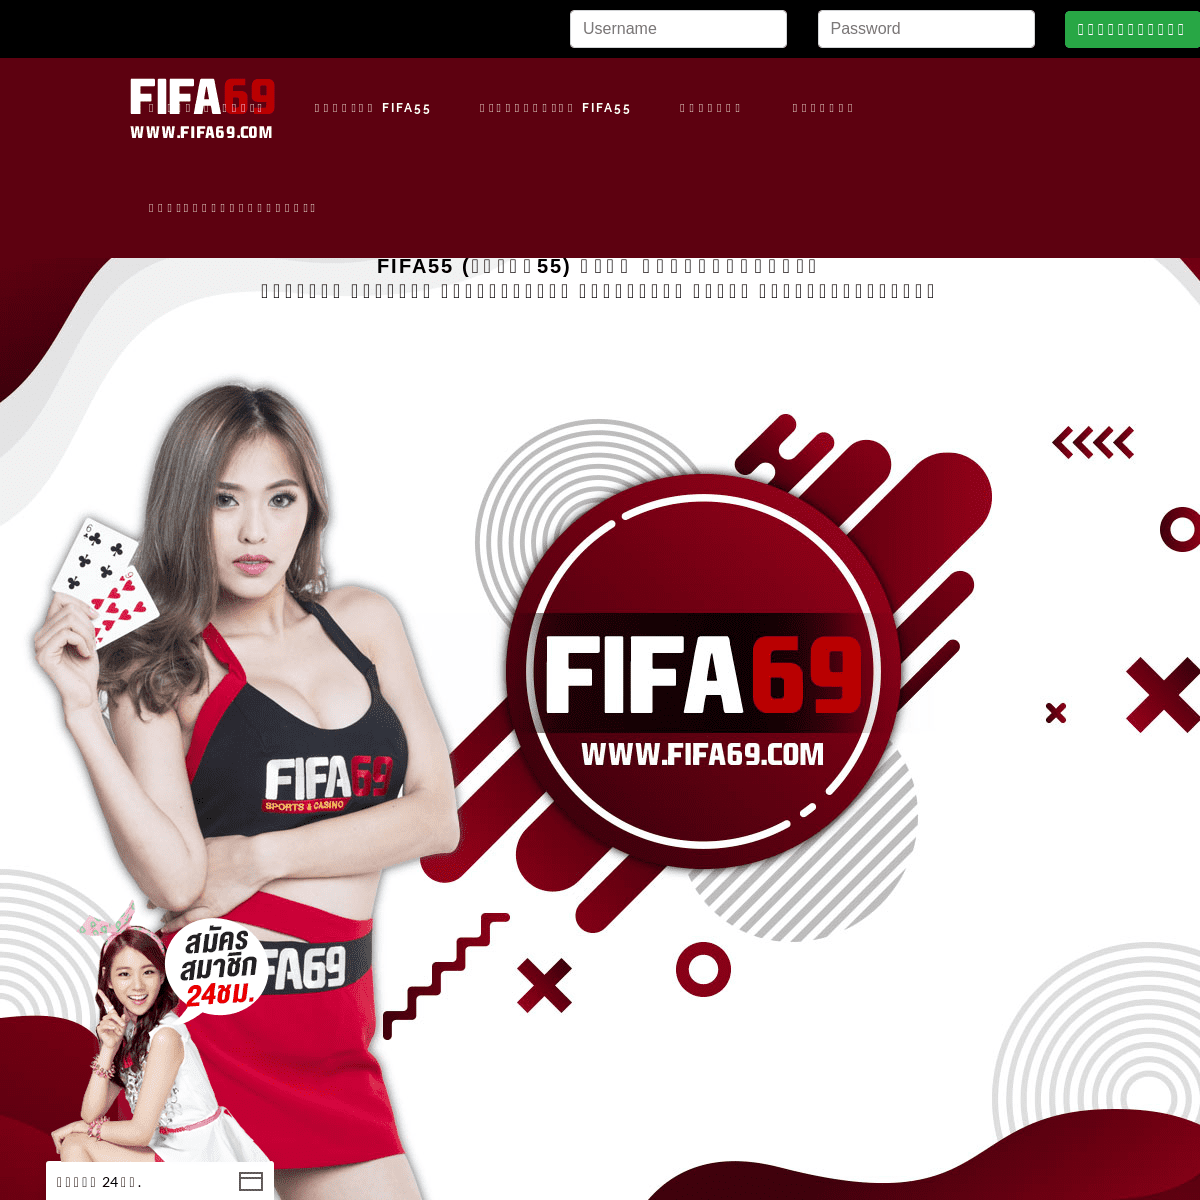 FIFA55 เว็บไซต์ แทงบอลออนไลน์ ทางเข้า สมัครสมาชิก พนันบอล ที่ดีที่สุด!